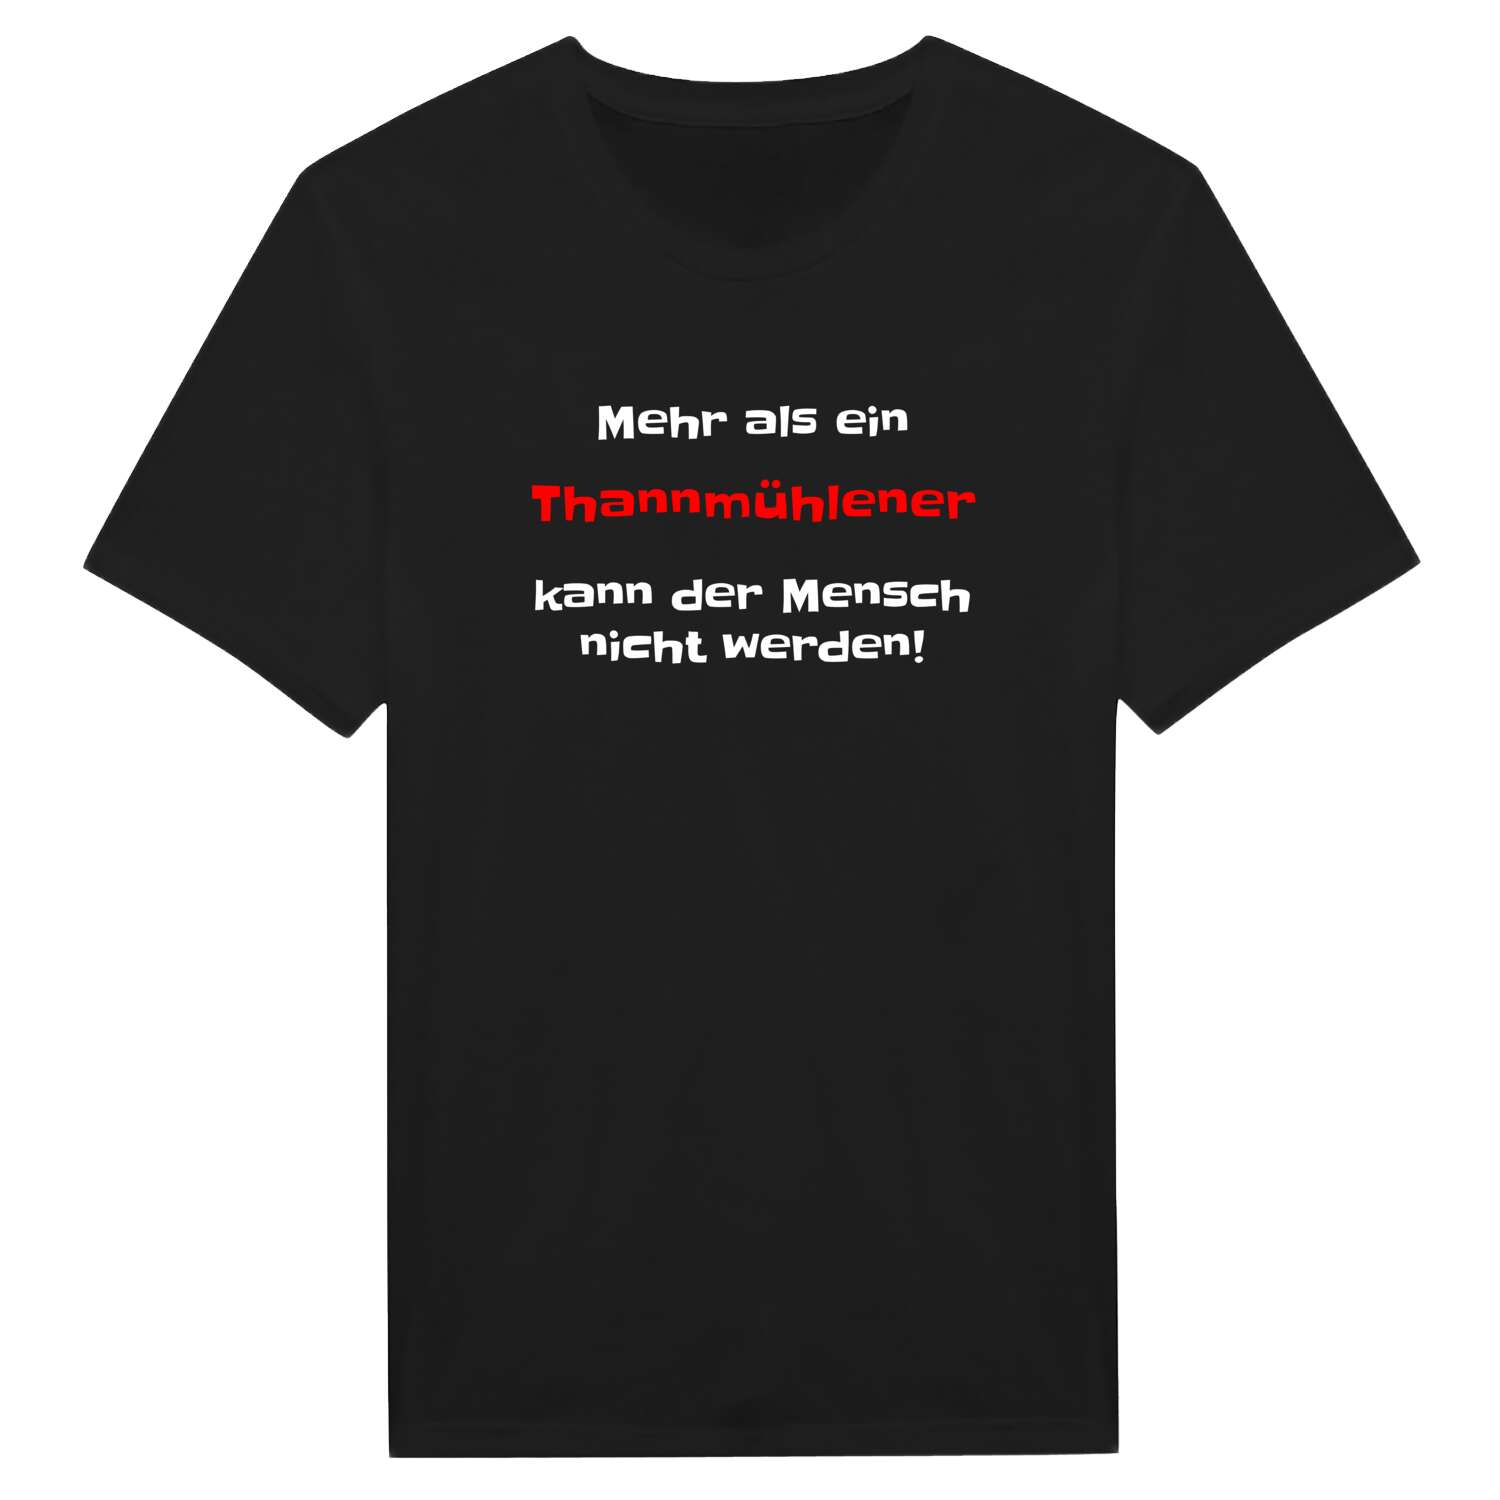 Thannmühle T-Shirt »Mehr als ein«